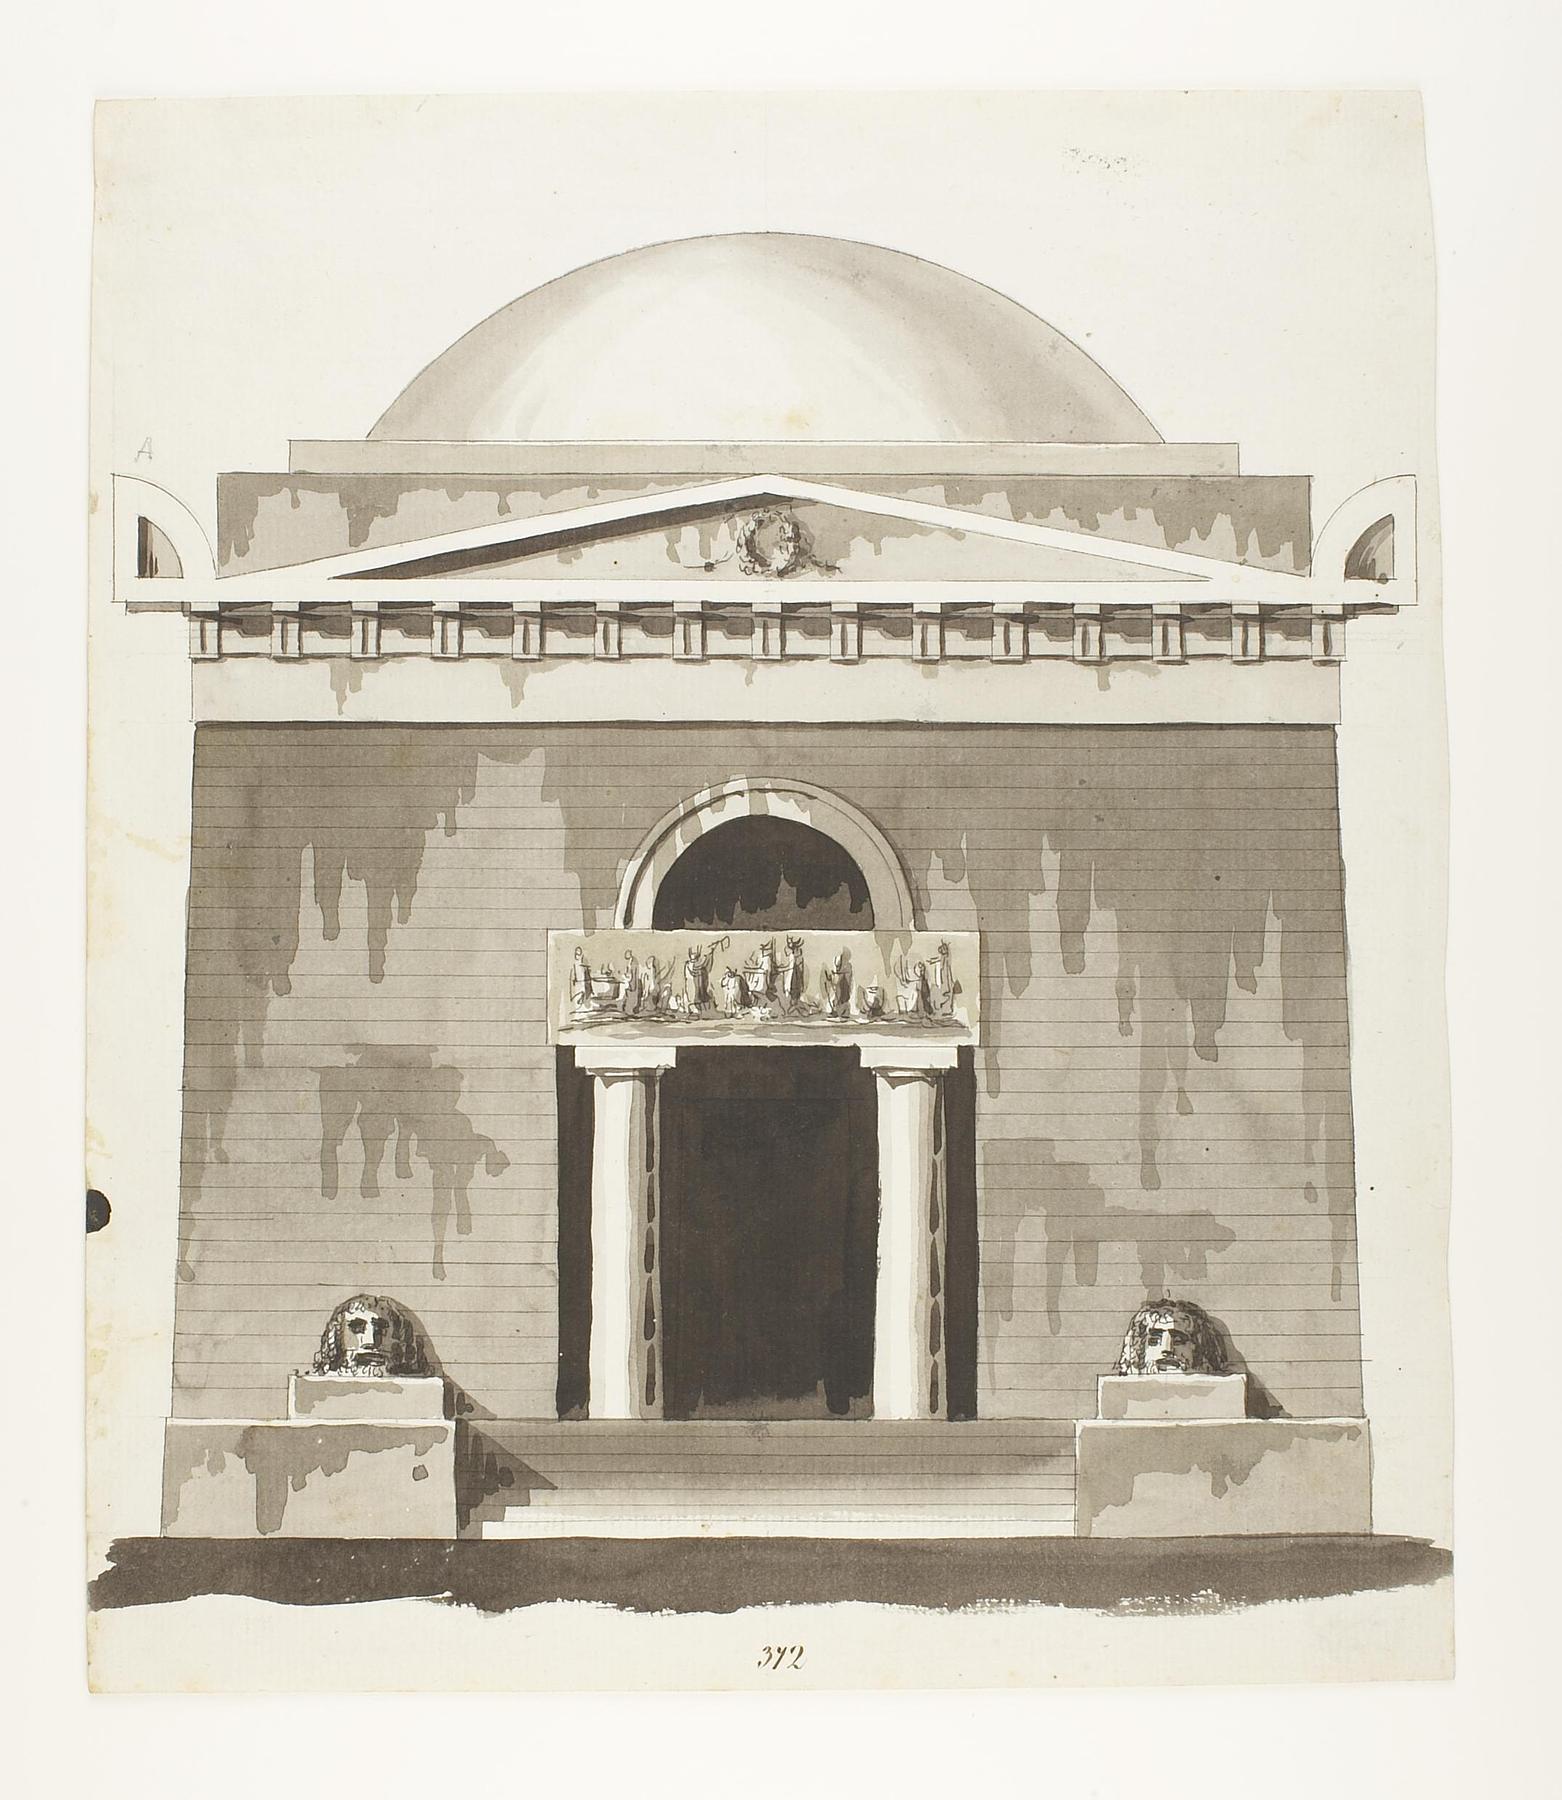 Udkast til et mausoleum eller gravkapel i antik stil, opstalt af facade, D860